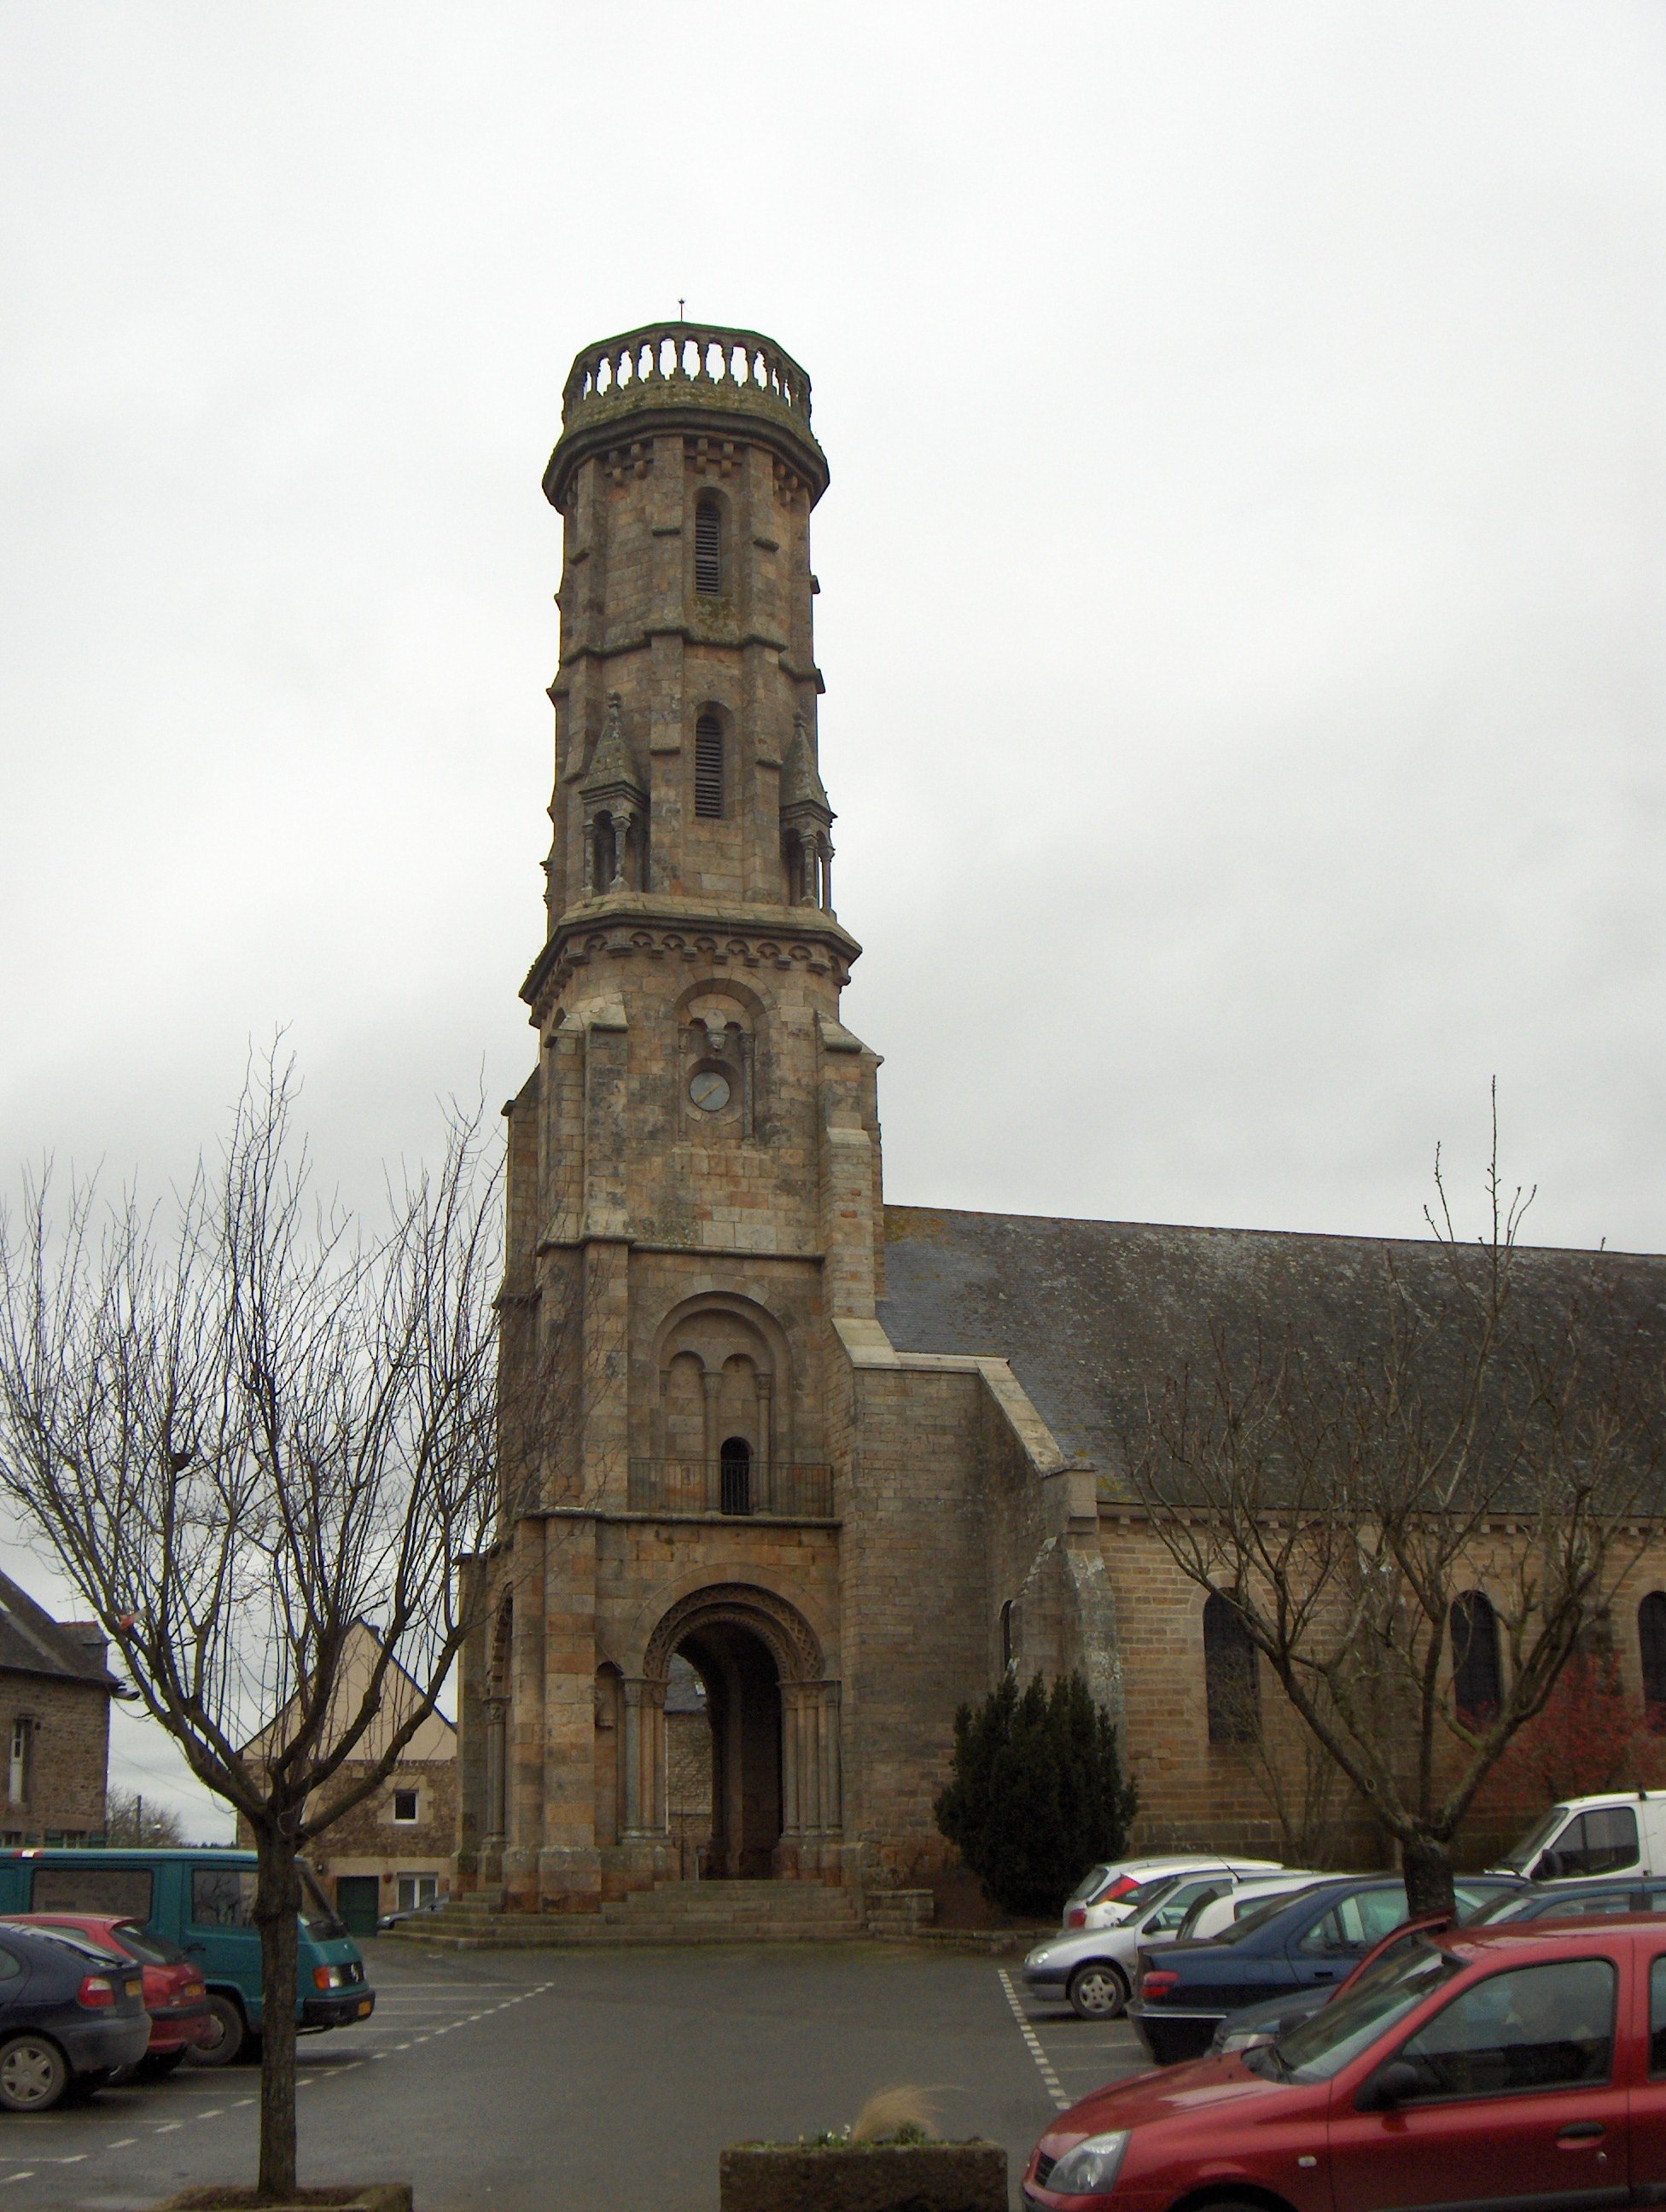 Église médiévale de style roman, mais dont le clocher est remplacé par une tour d’abord carrée sur ses trois étages inférieurs, puis octogonale pour les deux les plus élevés. Le toit est entouré d’une balustrade.